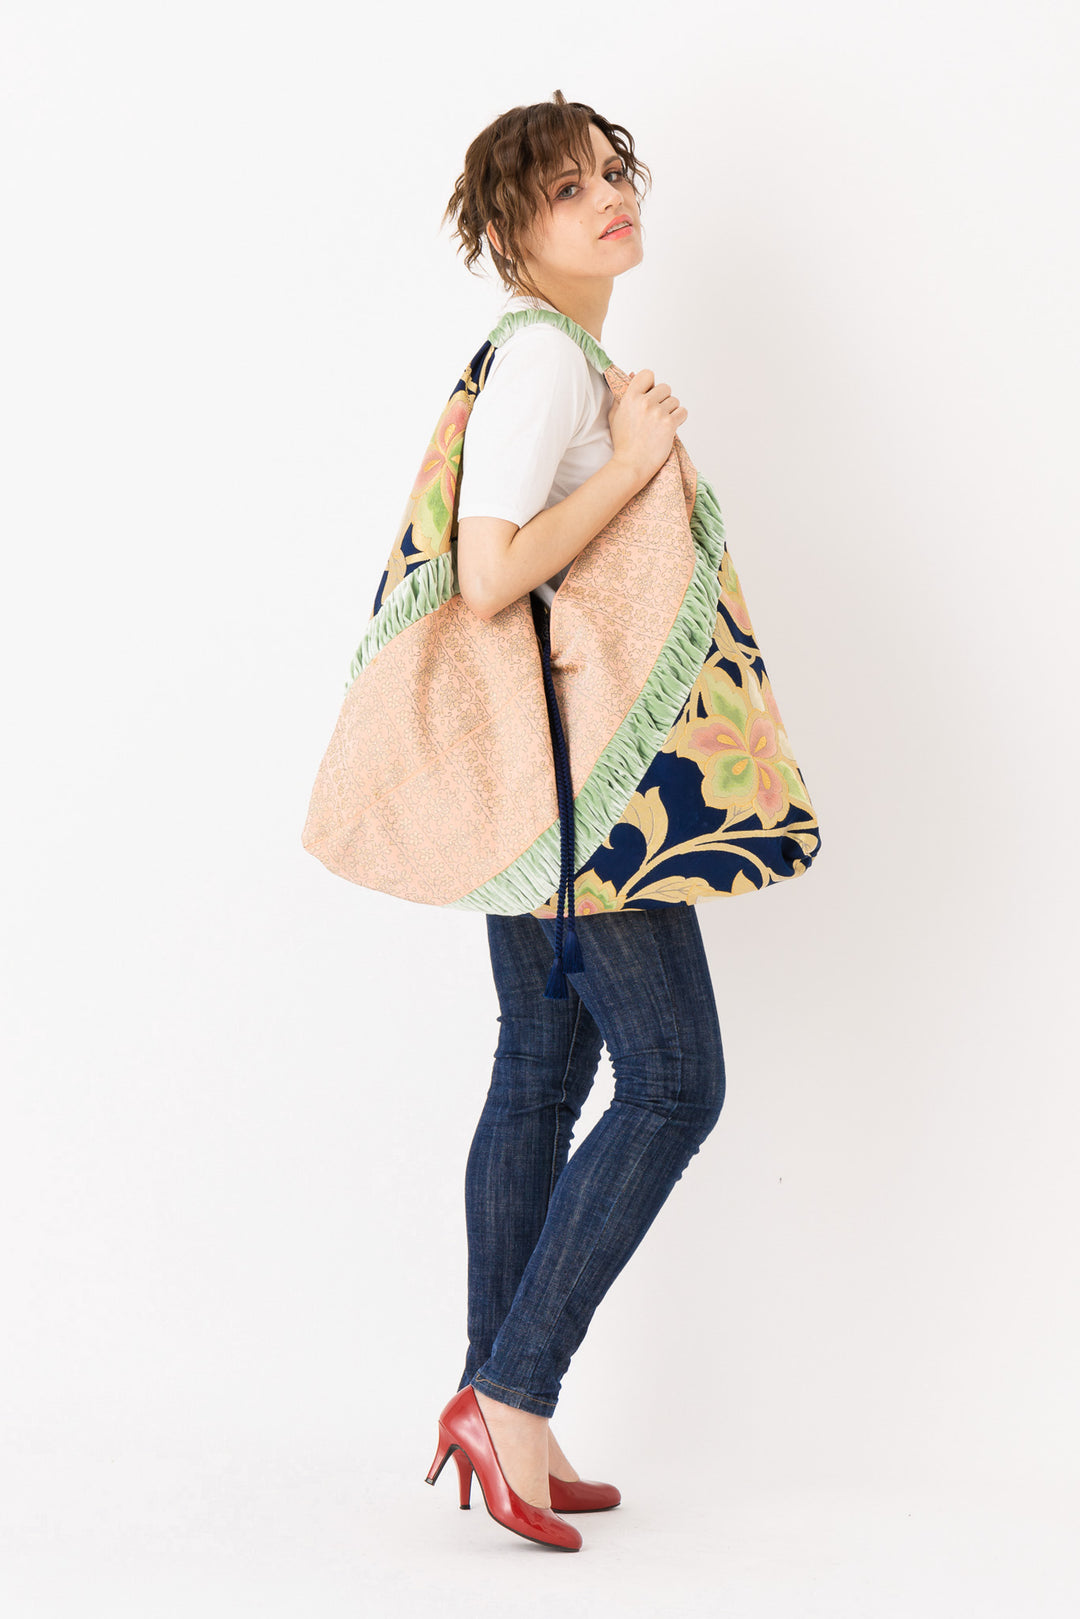 handbag for Girl tassel handbag Japanese style women's bag kimono